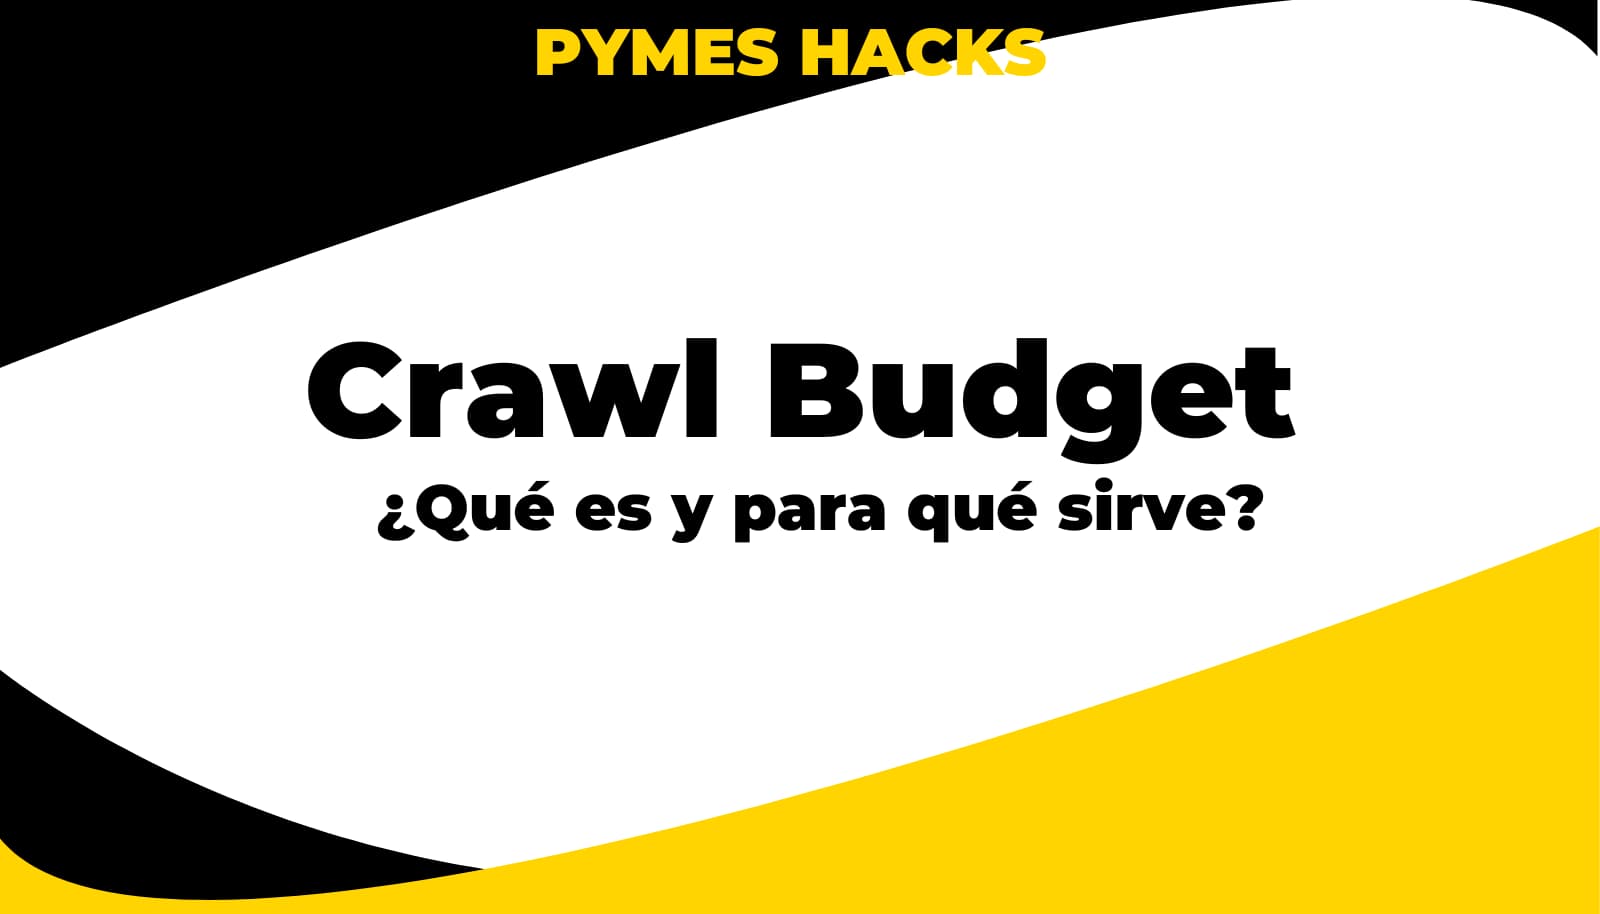 Crawl Budget (Presupuesto de Rastreo) ¿Qué es y para qué sirve?